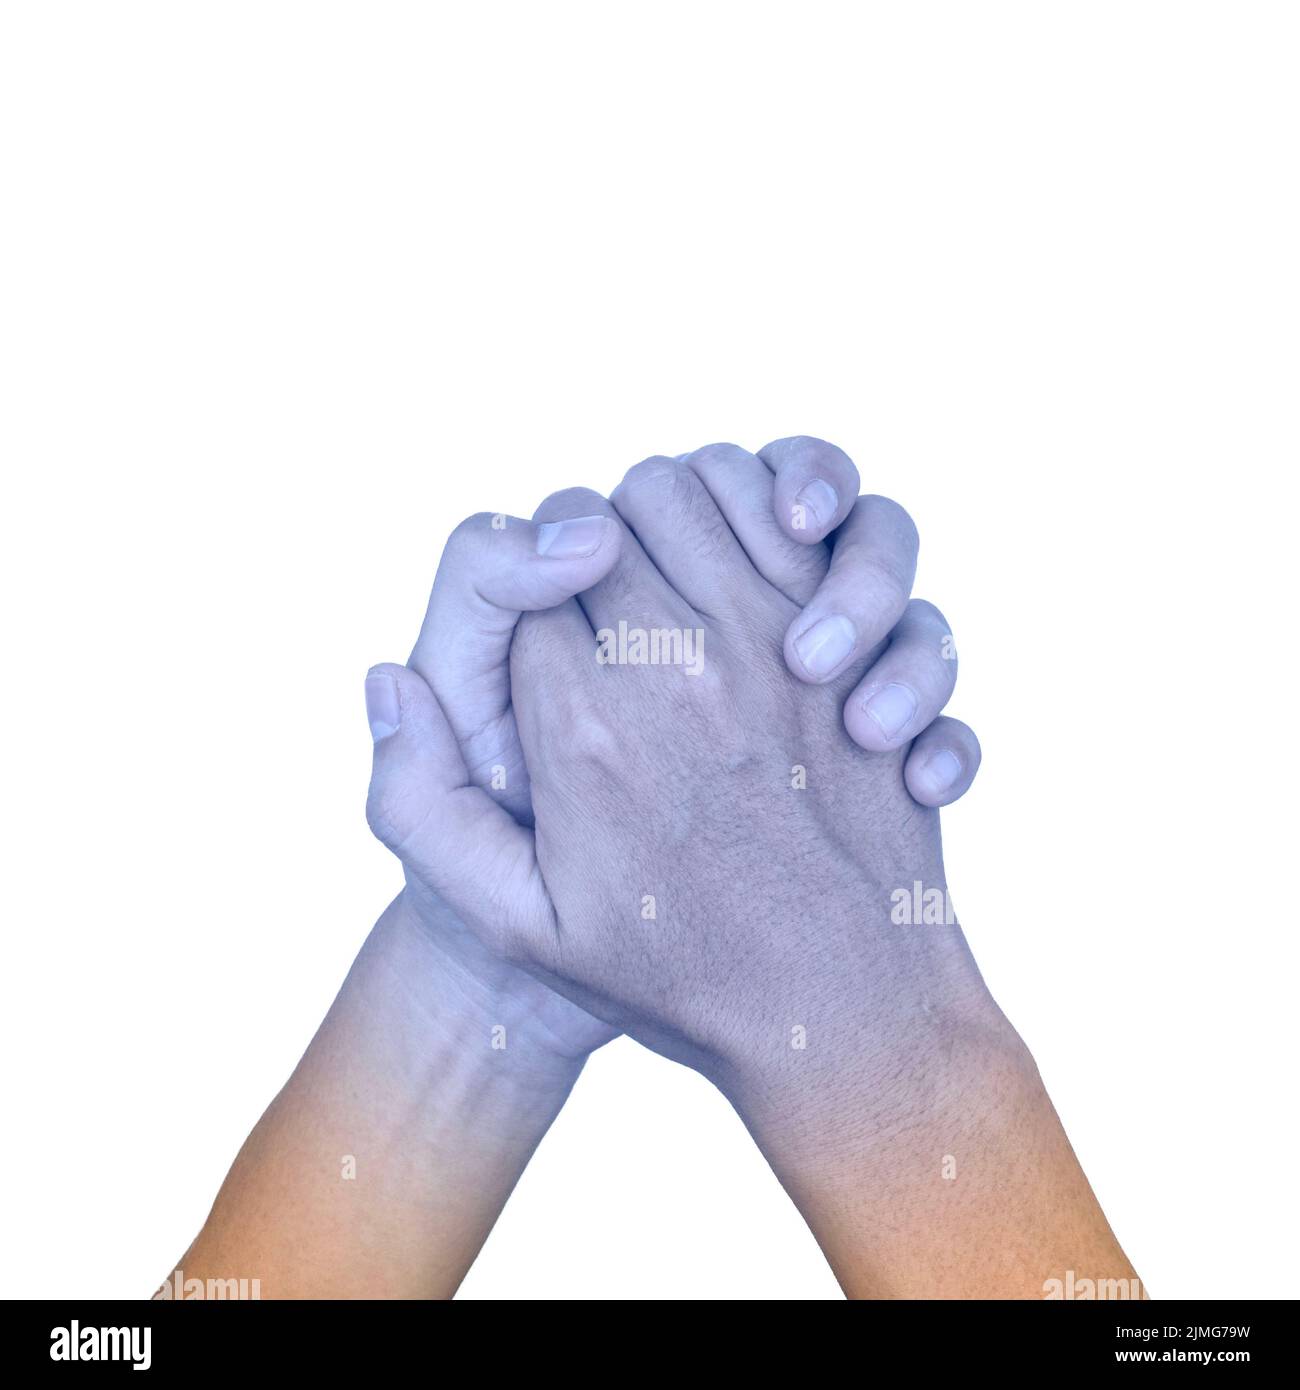 Zusammengekrallte Hände mit hellblauer Farbe des asiatischen jungen Mannes. Konzept der kalten und unbeholfenen Hand. Stockfoto